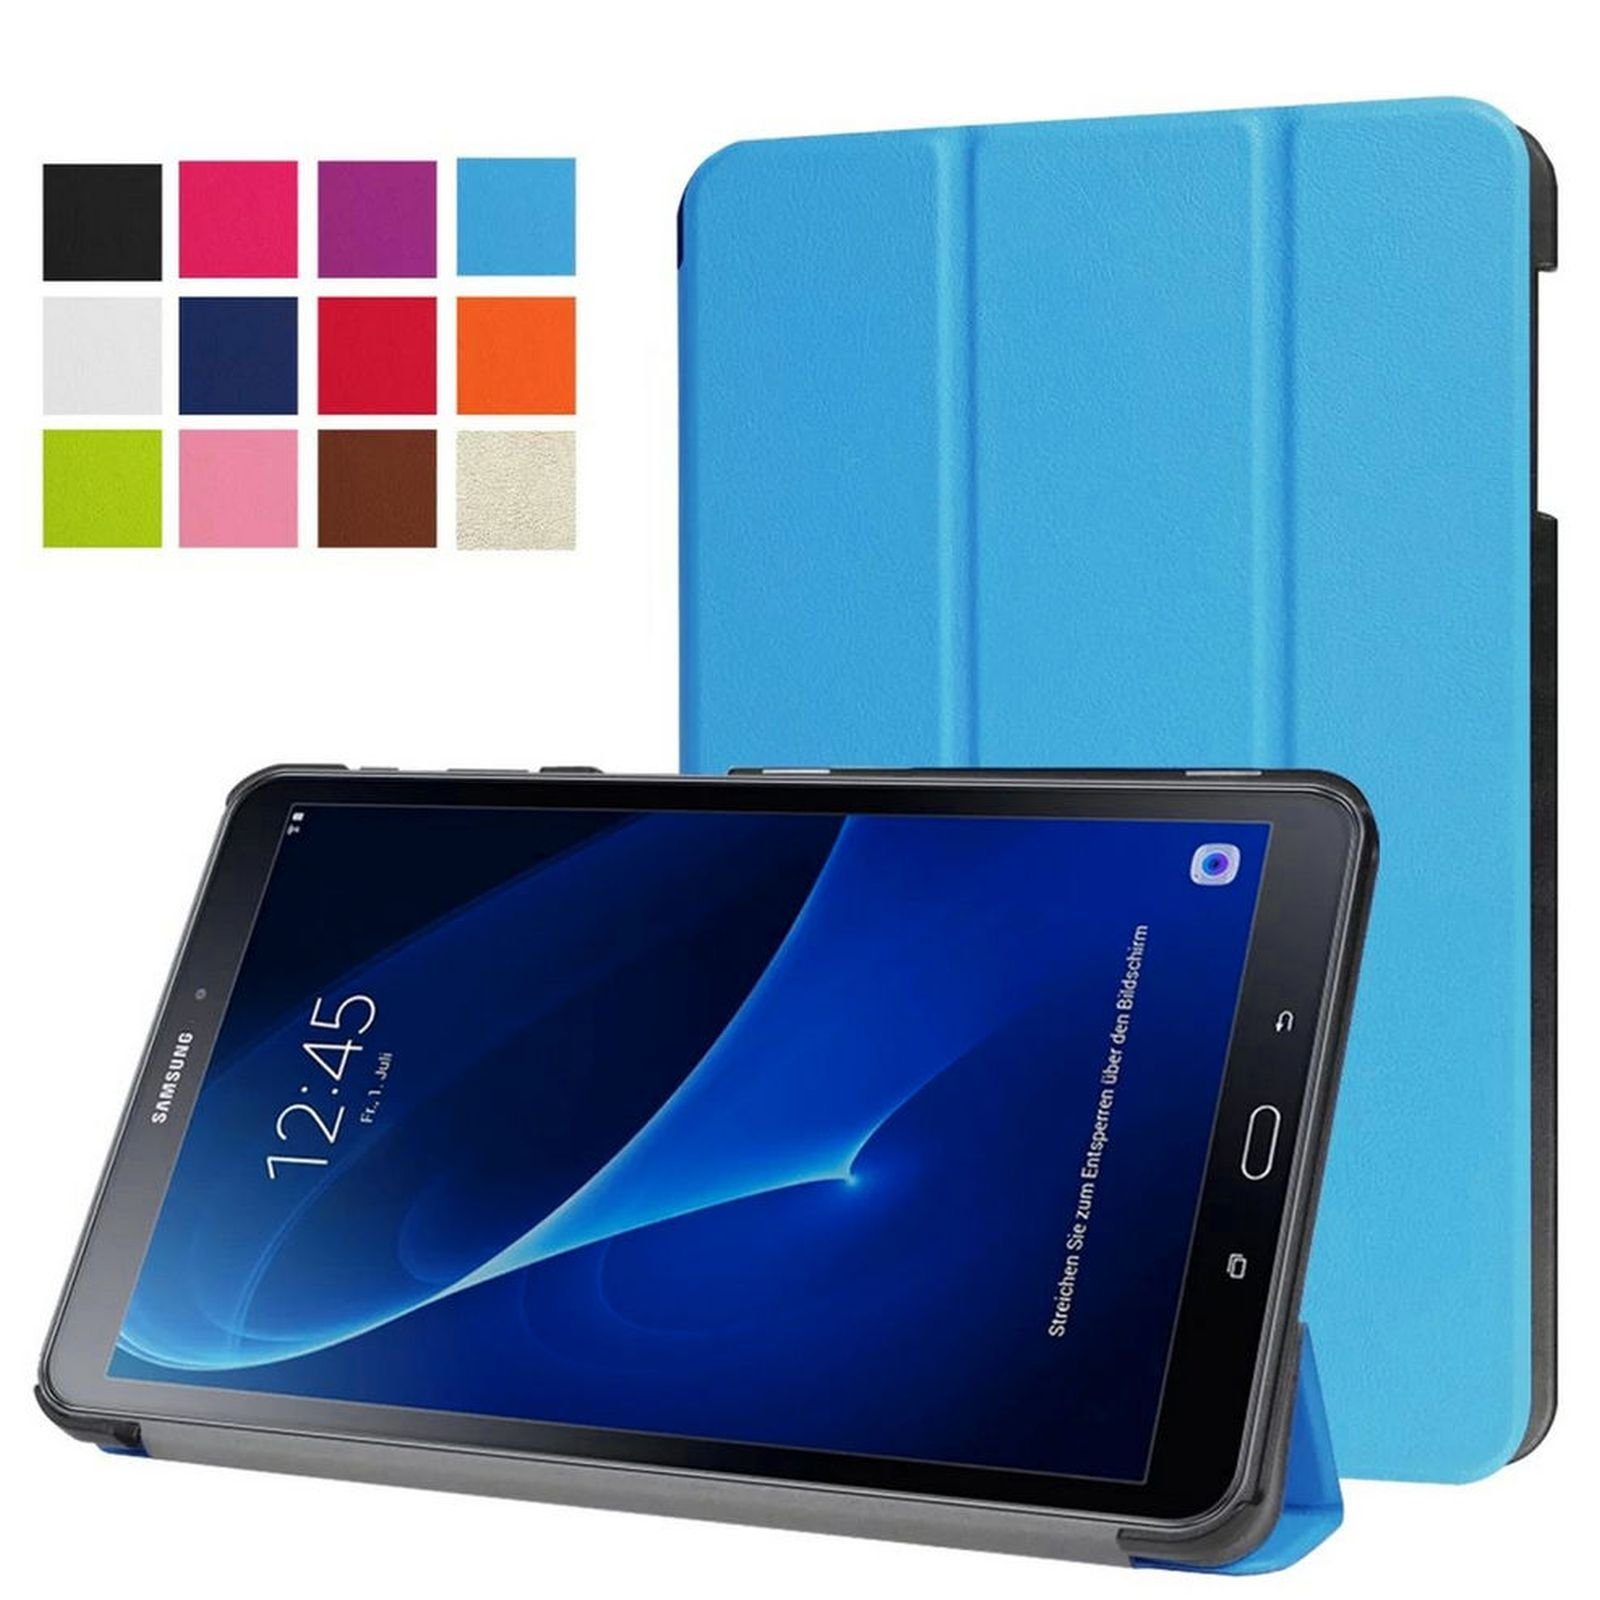 Lobwerk Tablet-Hülle Schutzhülle für Samsung Galaxy Tab A SM-T580 SM-T585  10.1 Zoll, Wake & Sleep Funktion, Sturzdämpfung, Aufstellfunktion